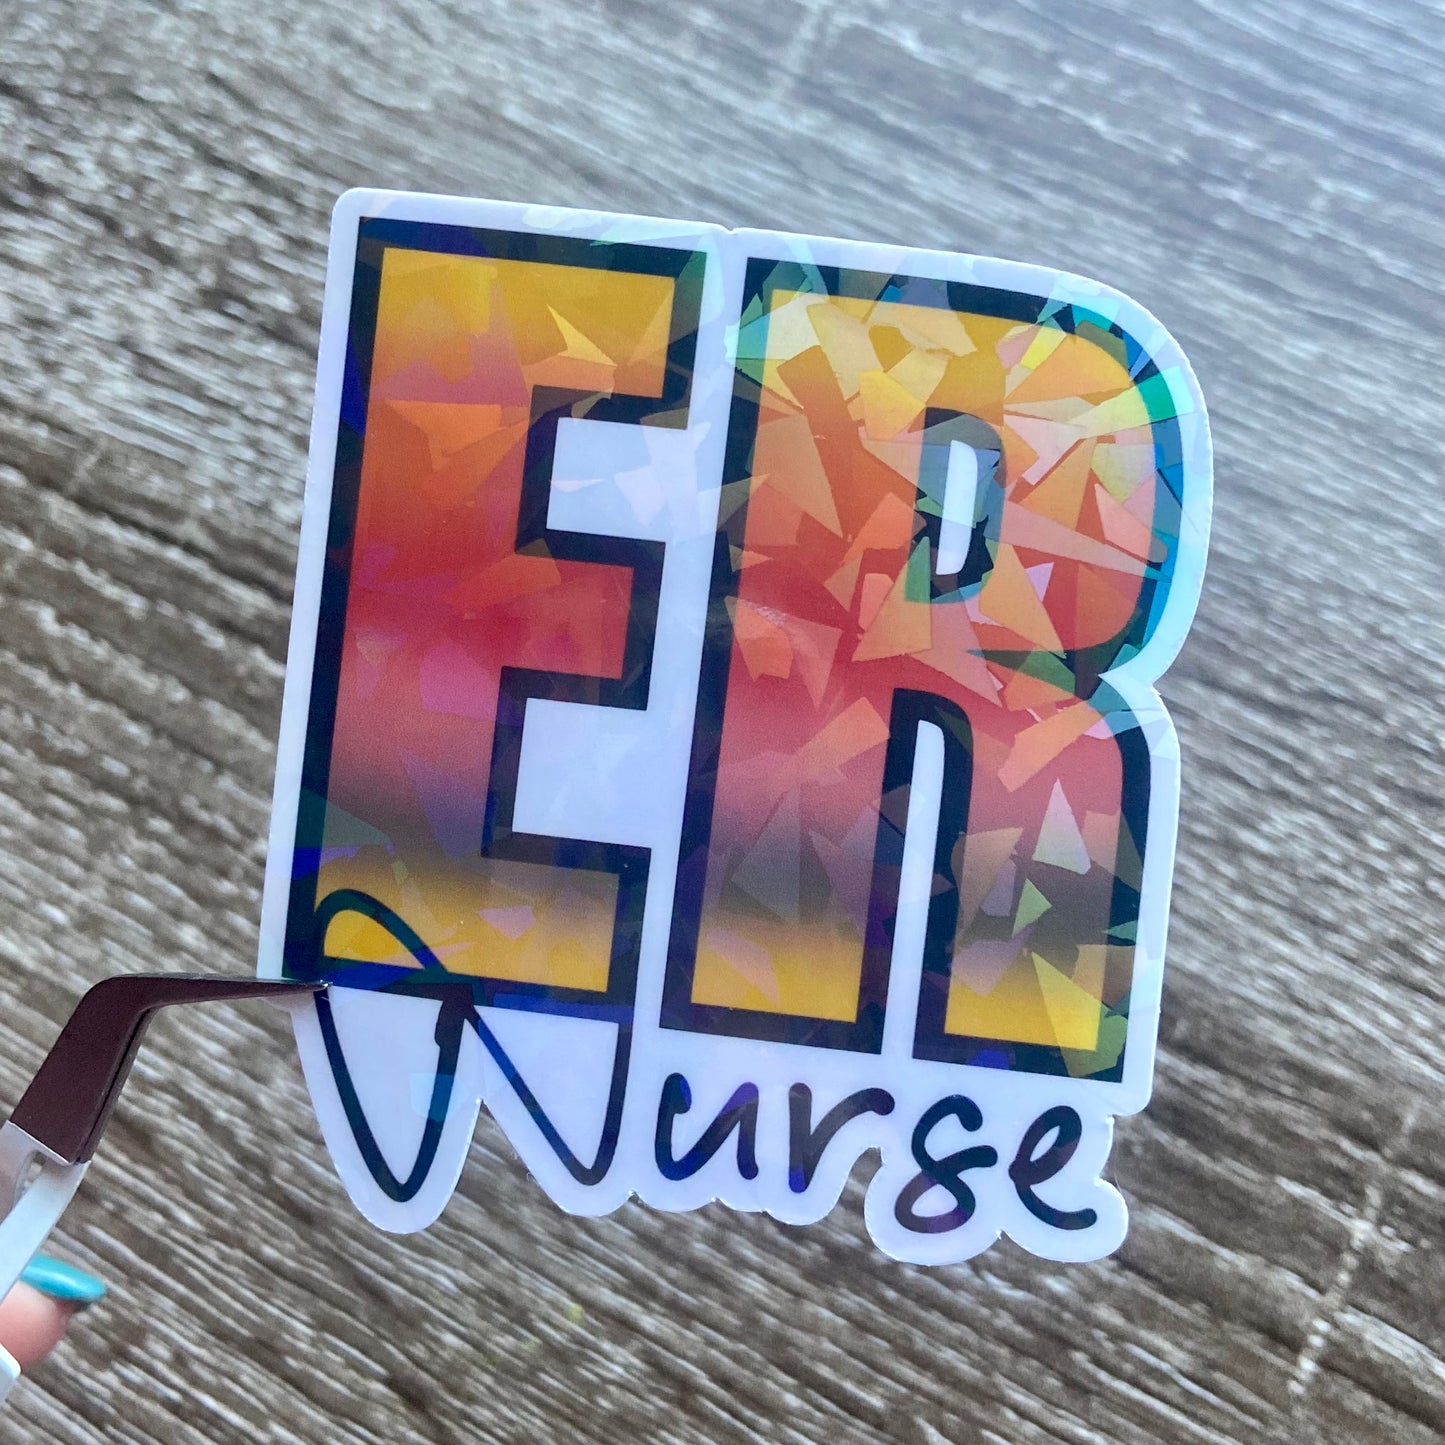 Fiery ER Nurse